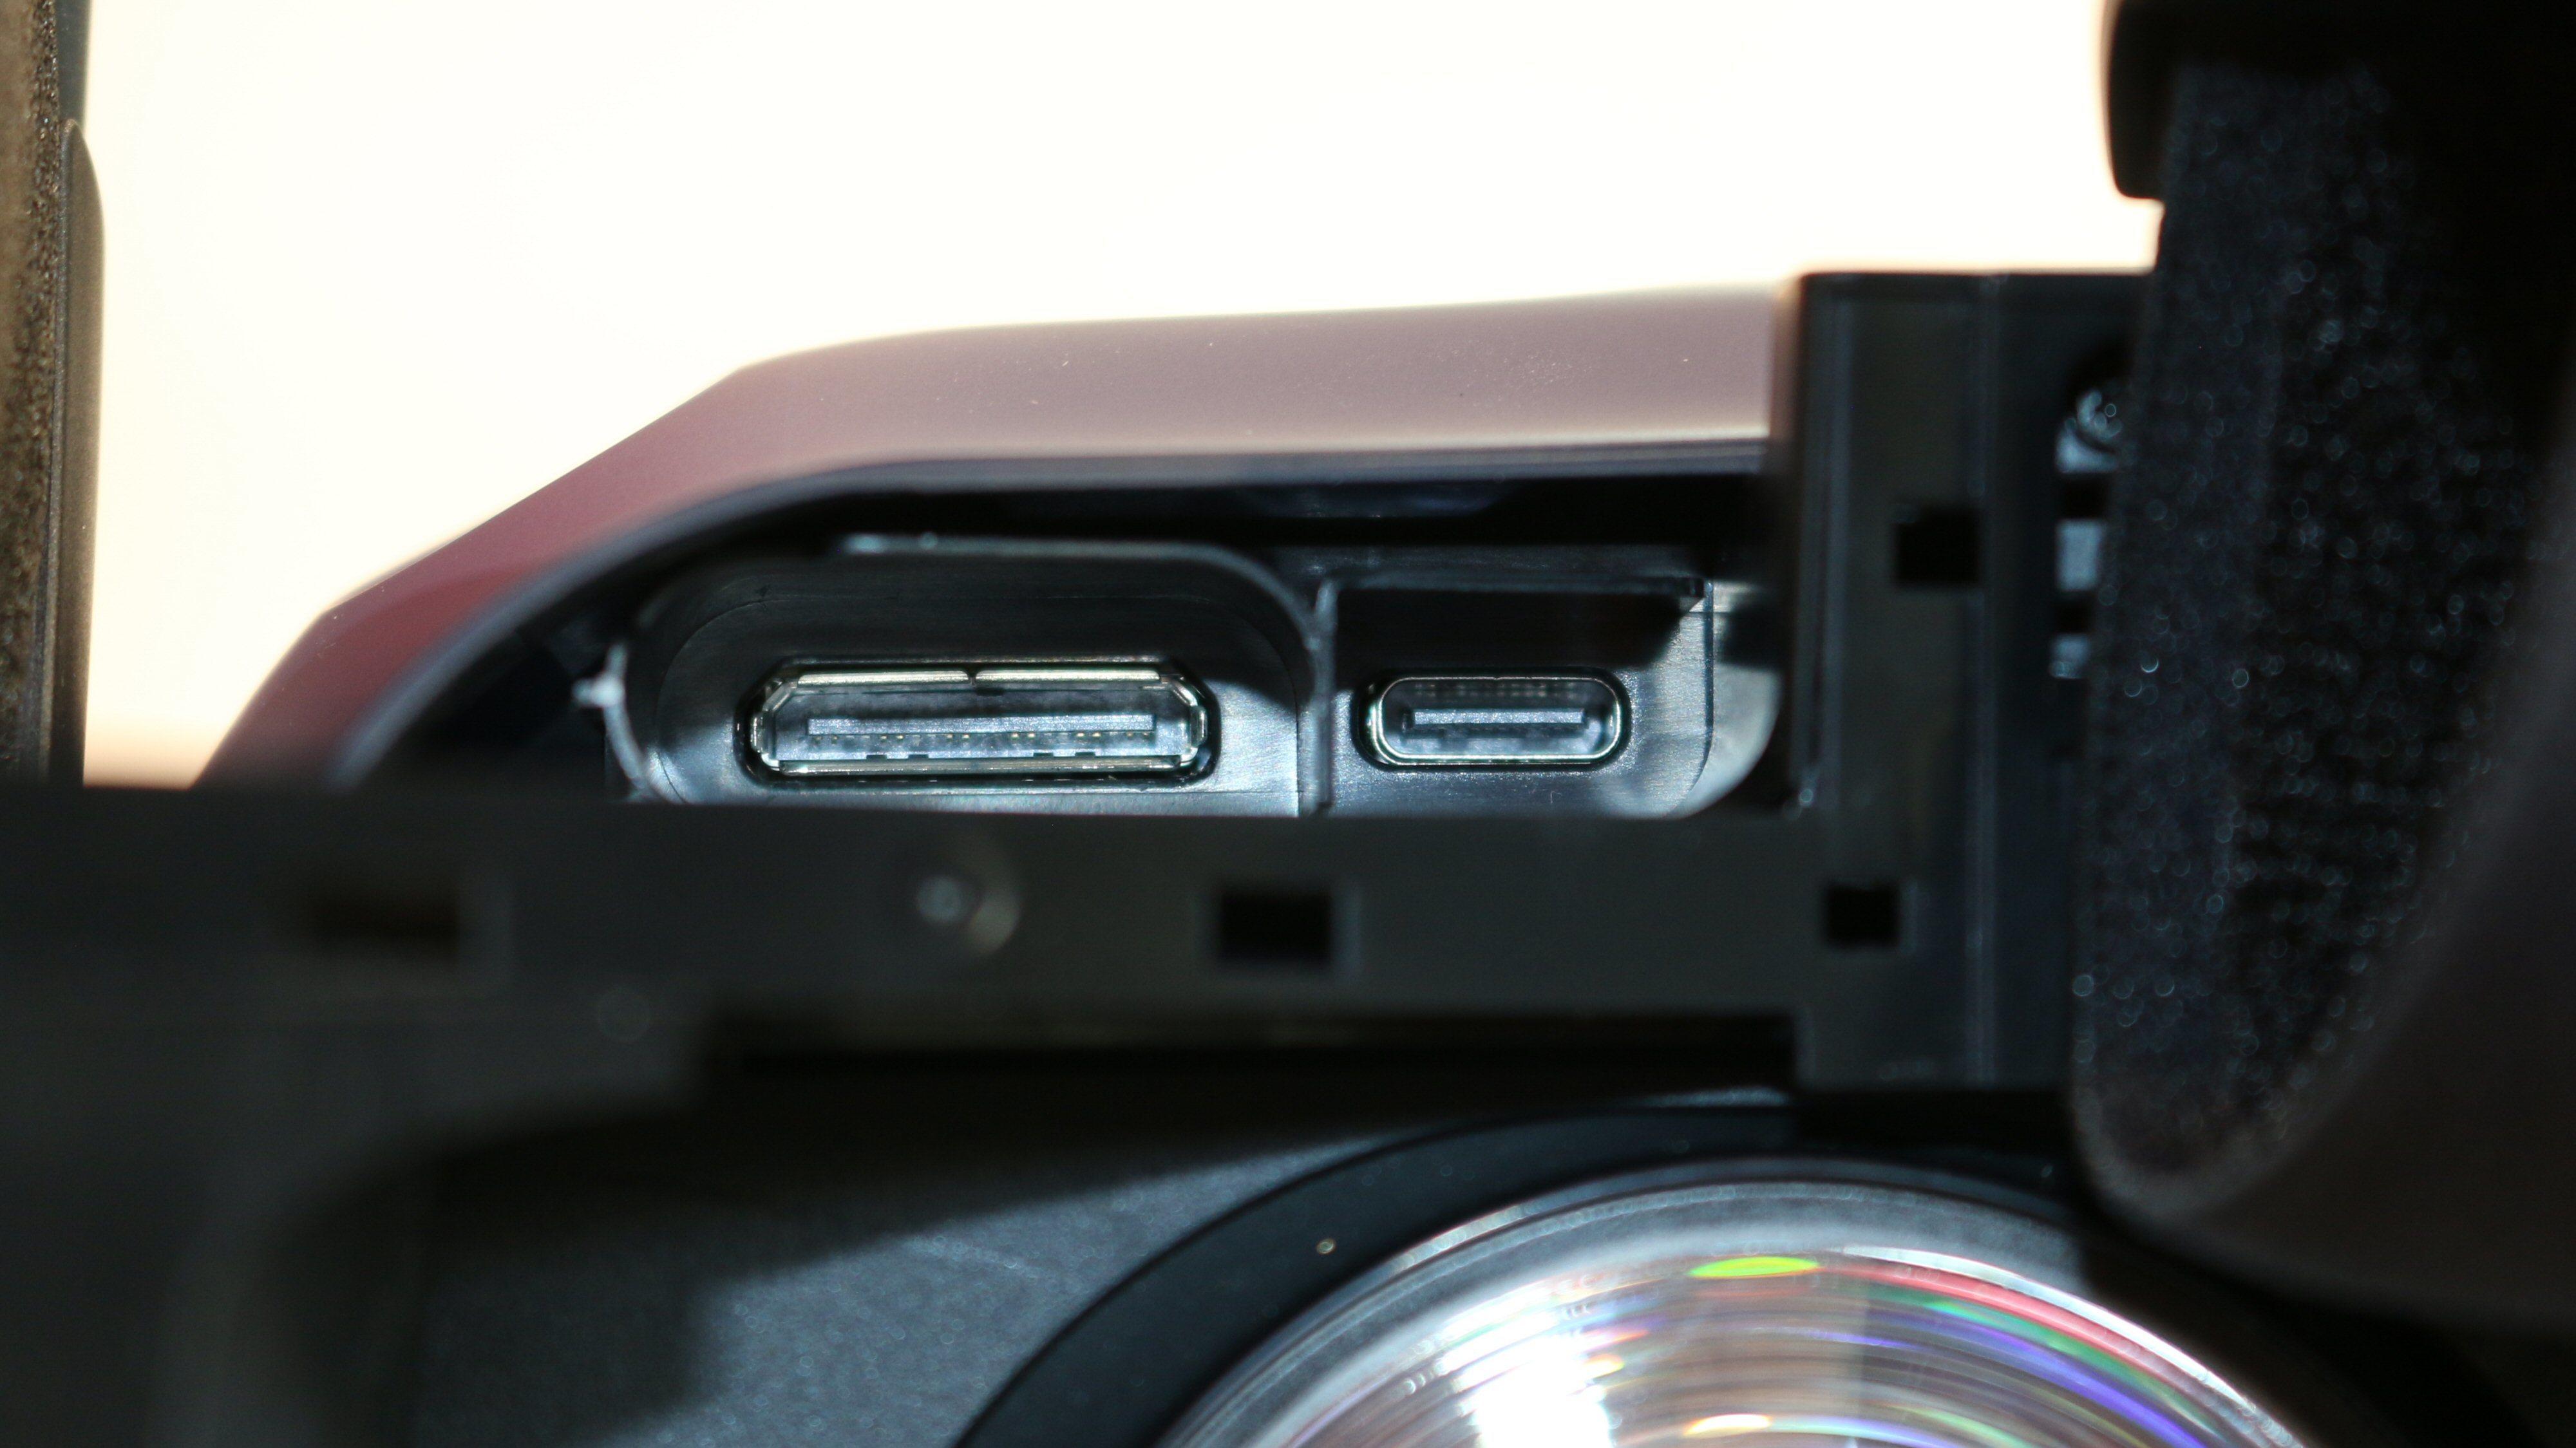 Den proprietære kontakten til venstre får strøm, bilde og USB gjennom en fem meter lang ledning, mens USB Type-C-kontakten til høyre gir lyd ut til tredjeparts hodetelefoner. Muligens har den også andre funksjoner.